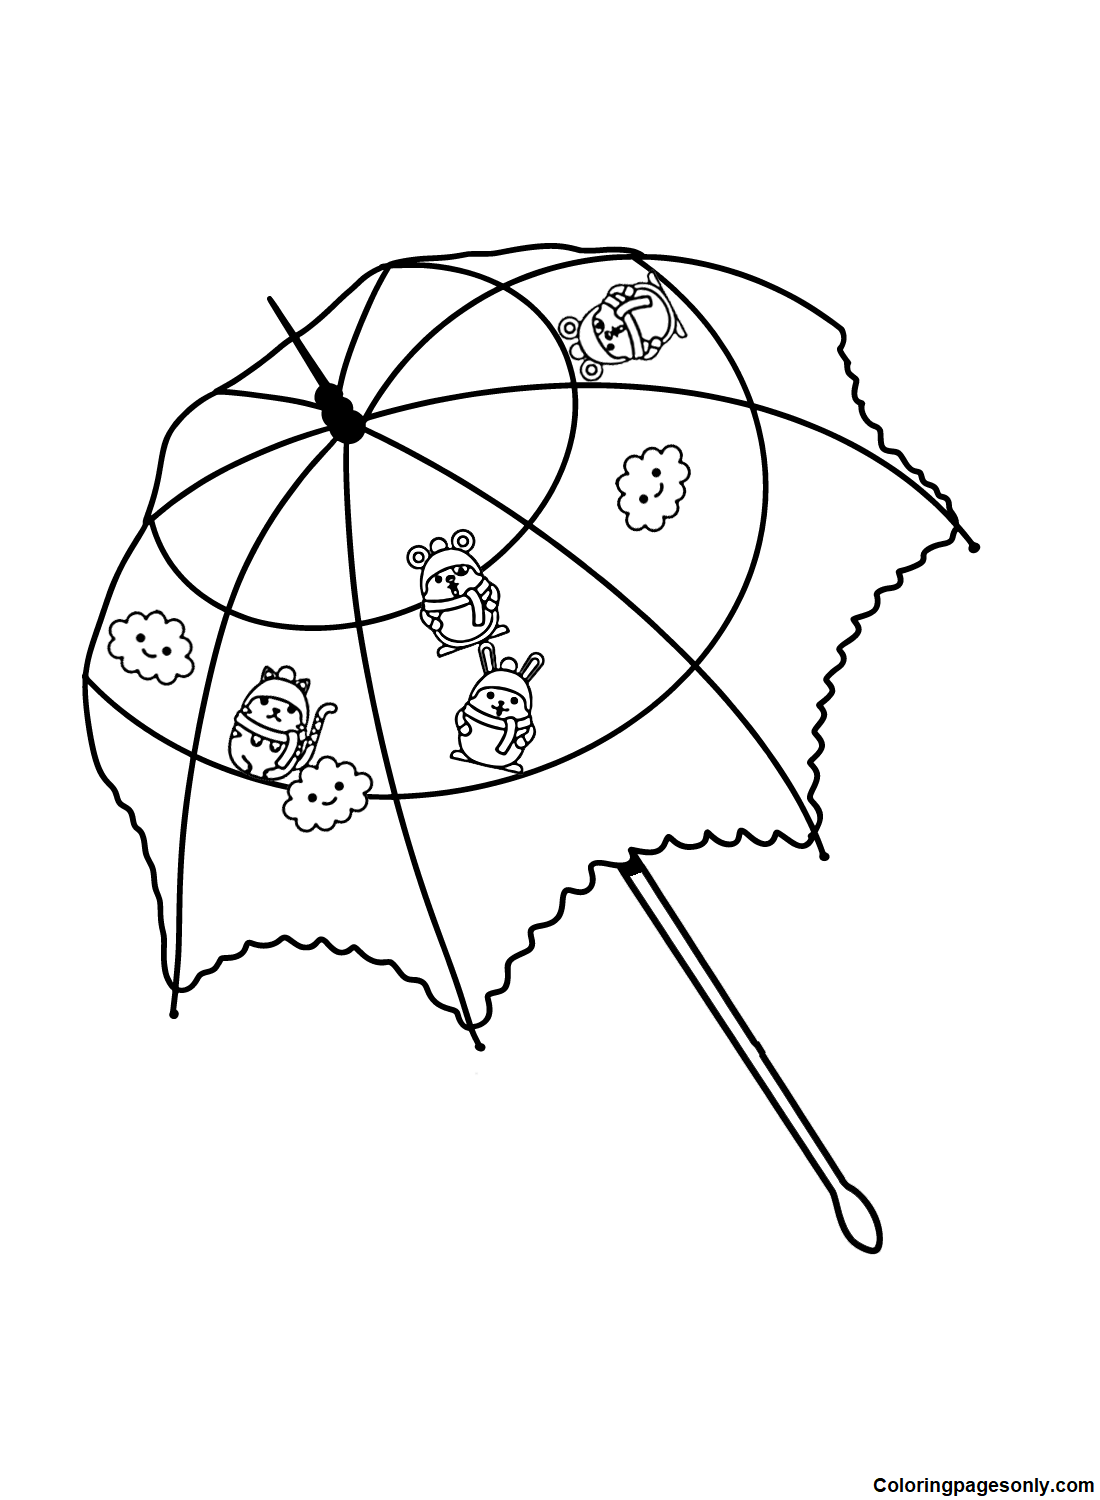 Imagens Guarda-chuva da Umbrella